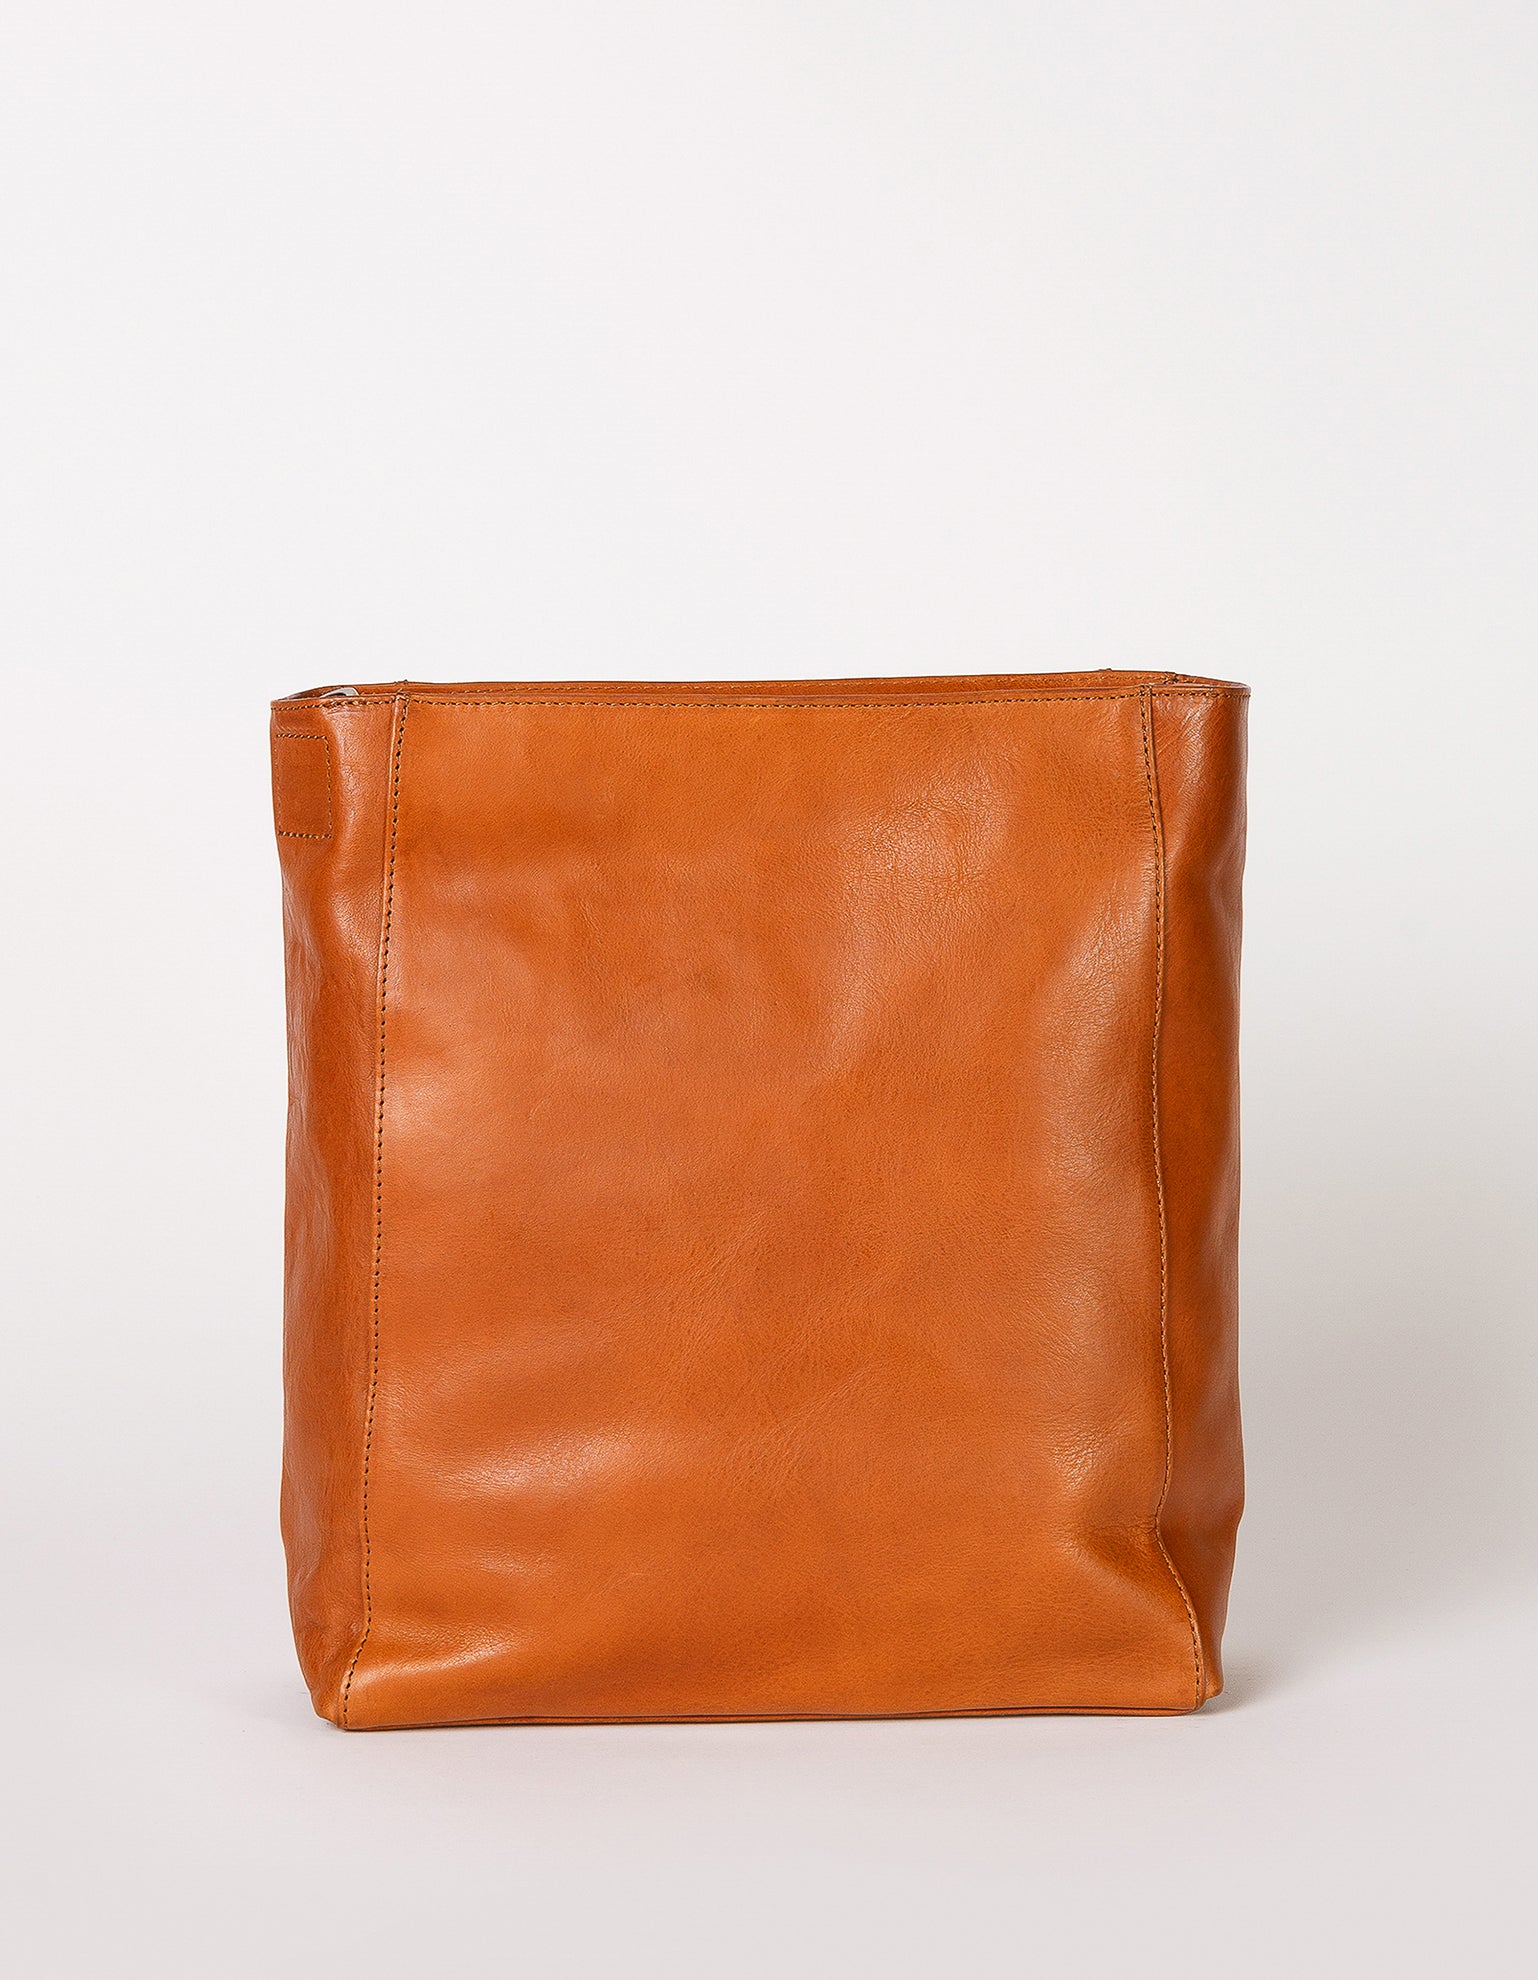 Sofia - Cognac Stromboli Leather - back product image